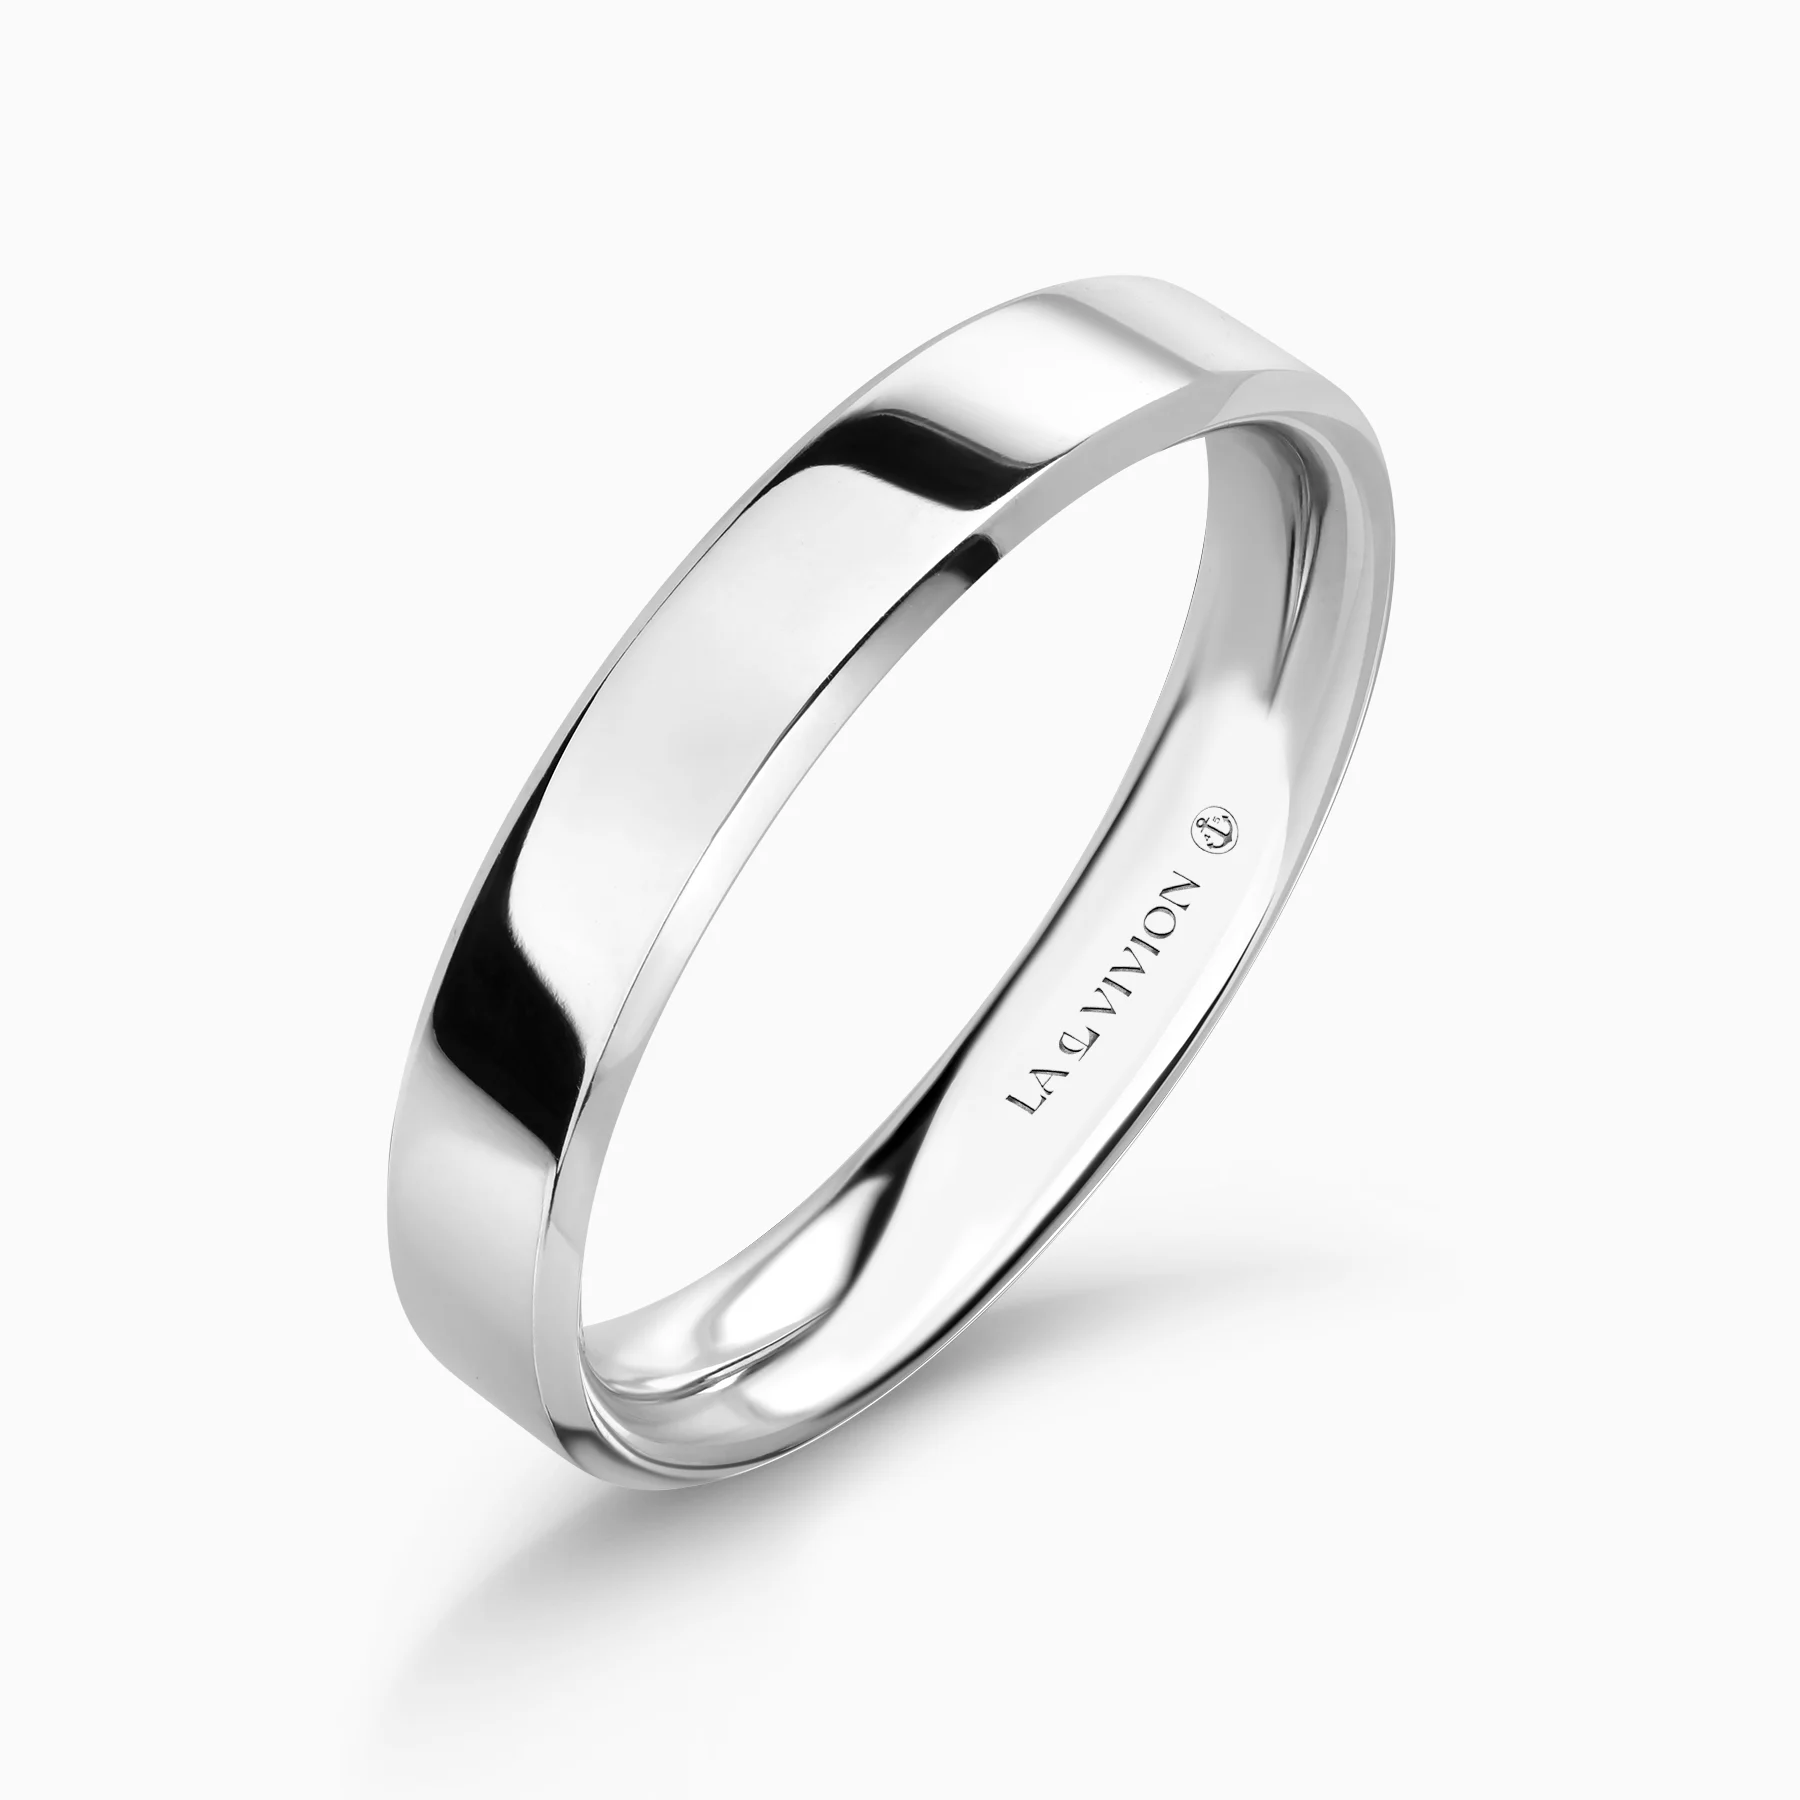 Обручальное кольцо Symbole 3 mm (Символ)